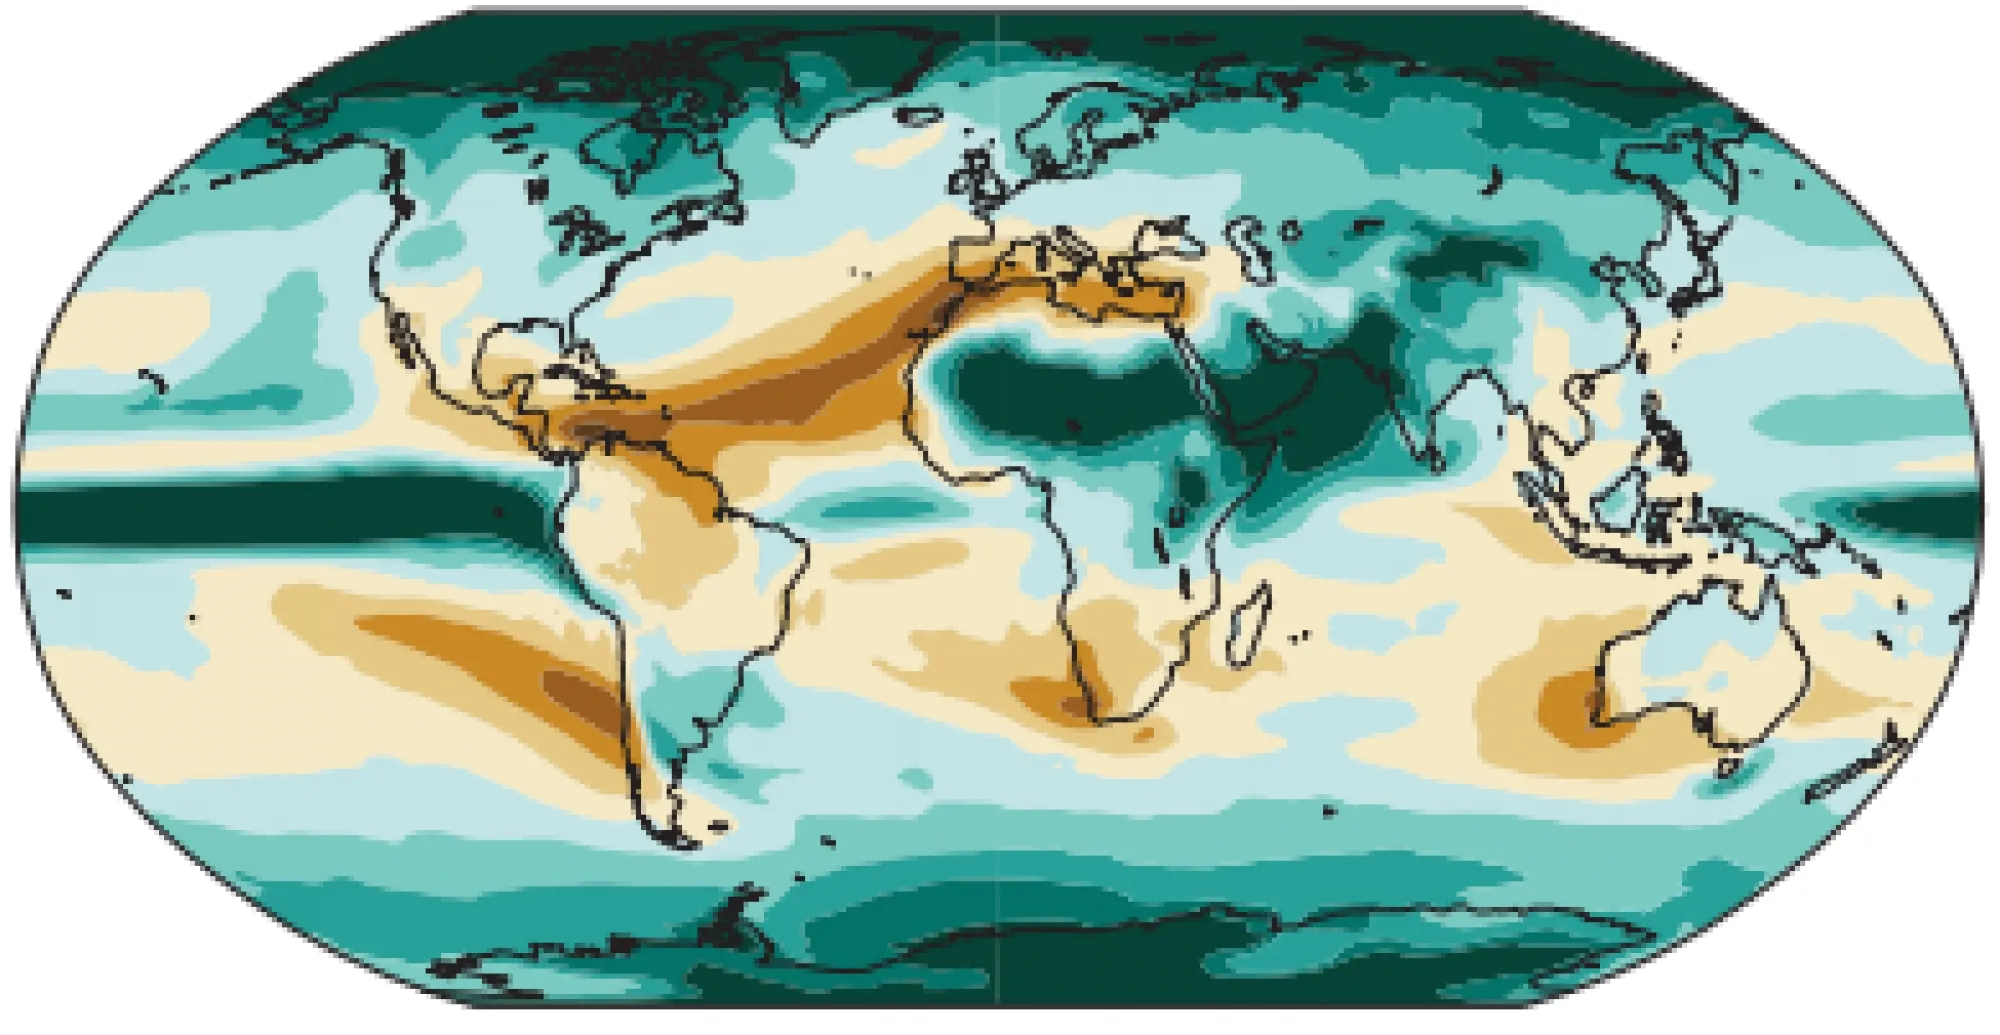 Mapa da mudanÃ§a anual mÃ©dia nas chuvas (%) em comparaÃ§Ã£o a 1850-1900 (prÃ©-industrial). MudanÃ§a simulada a 4 Â°C de aquecimento global